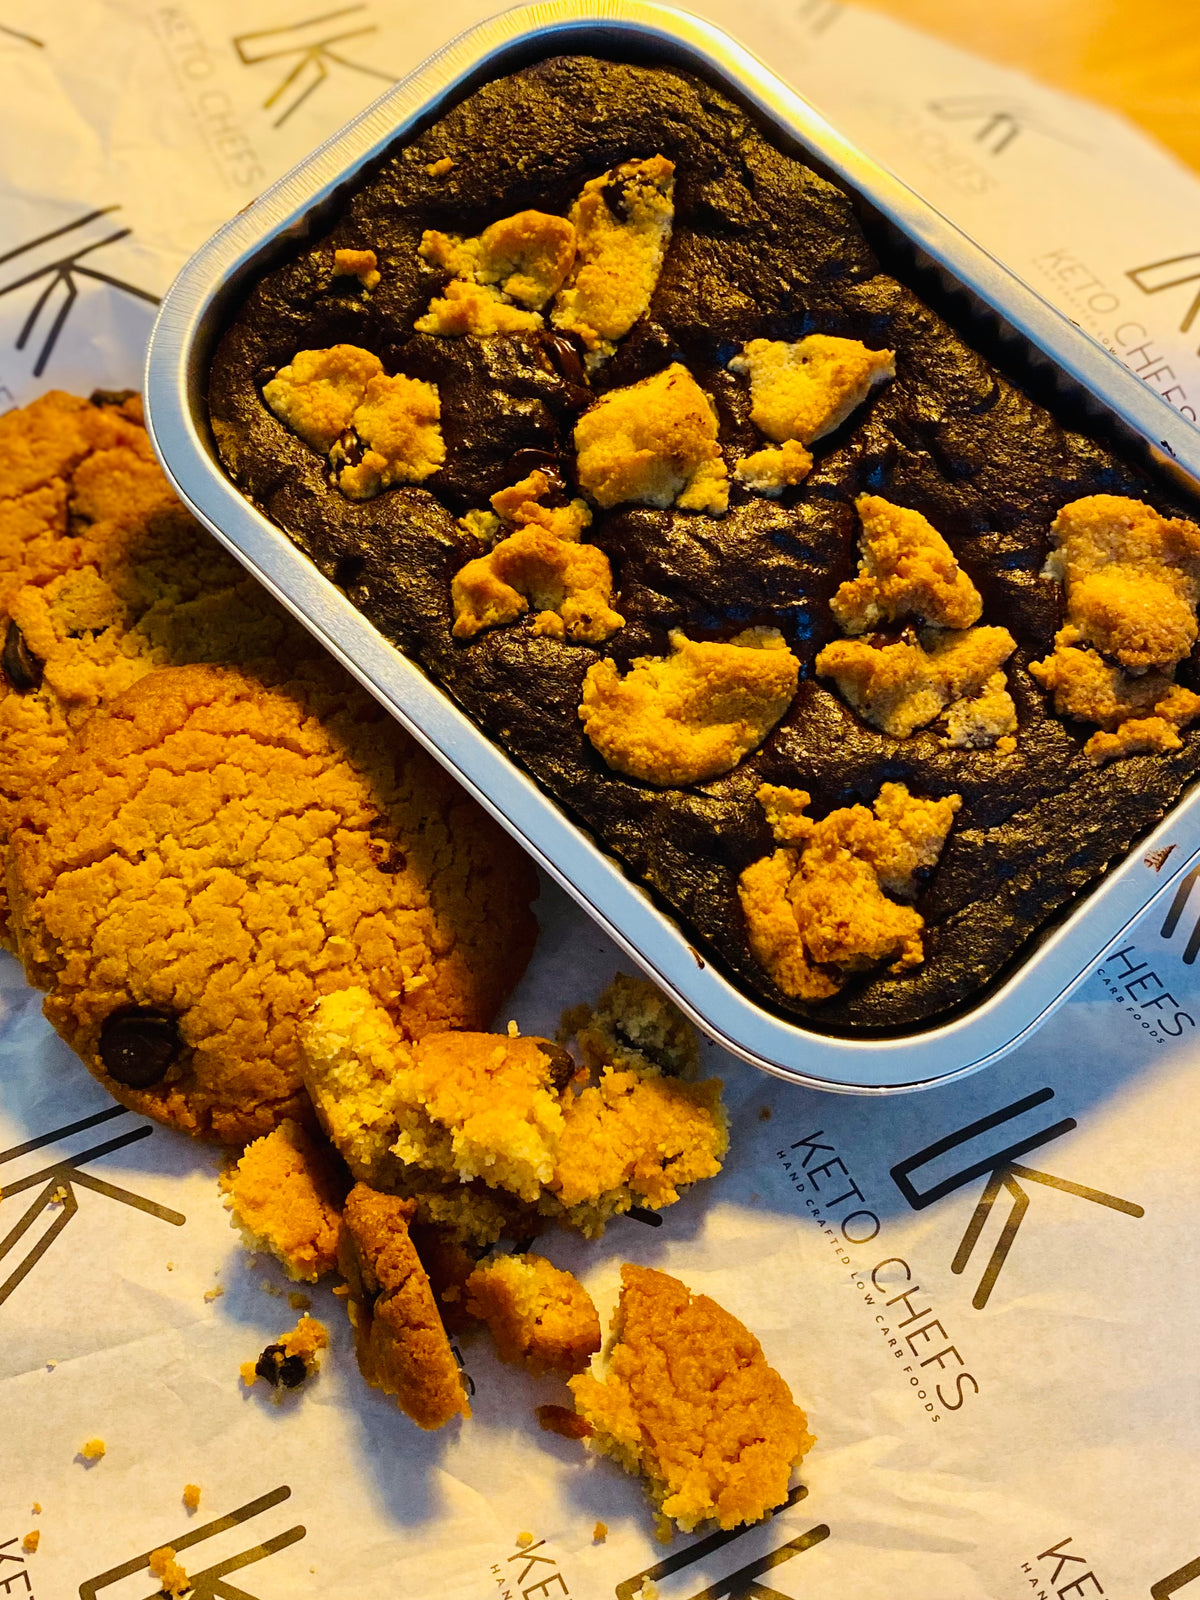 Cookie Crumb & Belgium Dark Chocolate Brownie (krownie) 6/8 portions (FREEZER FRIENDLY) 400g